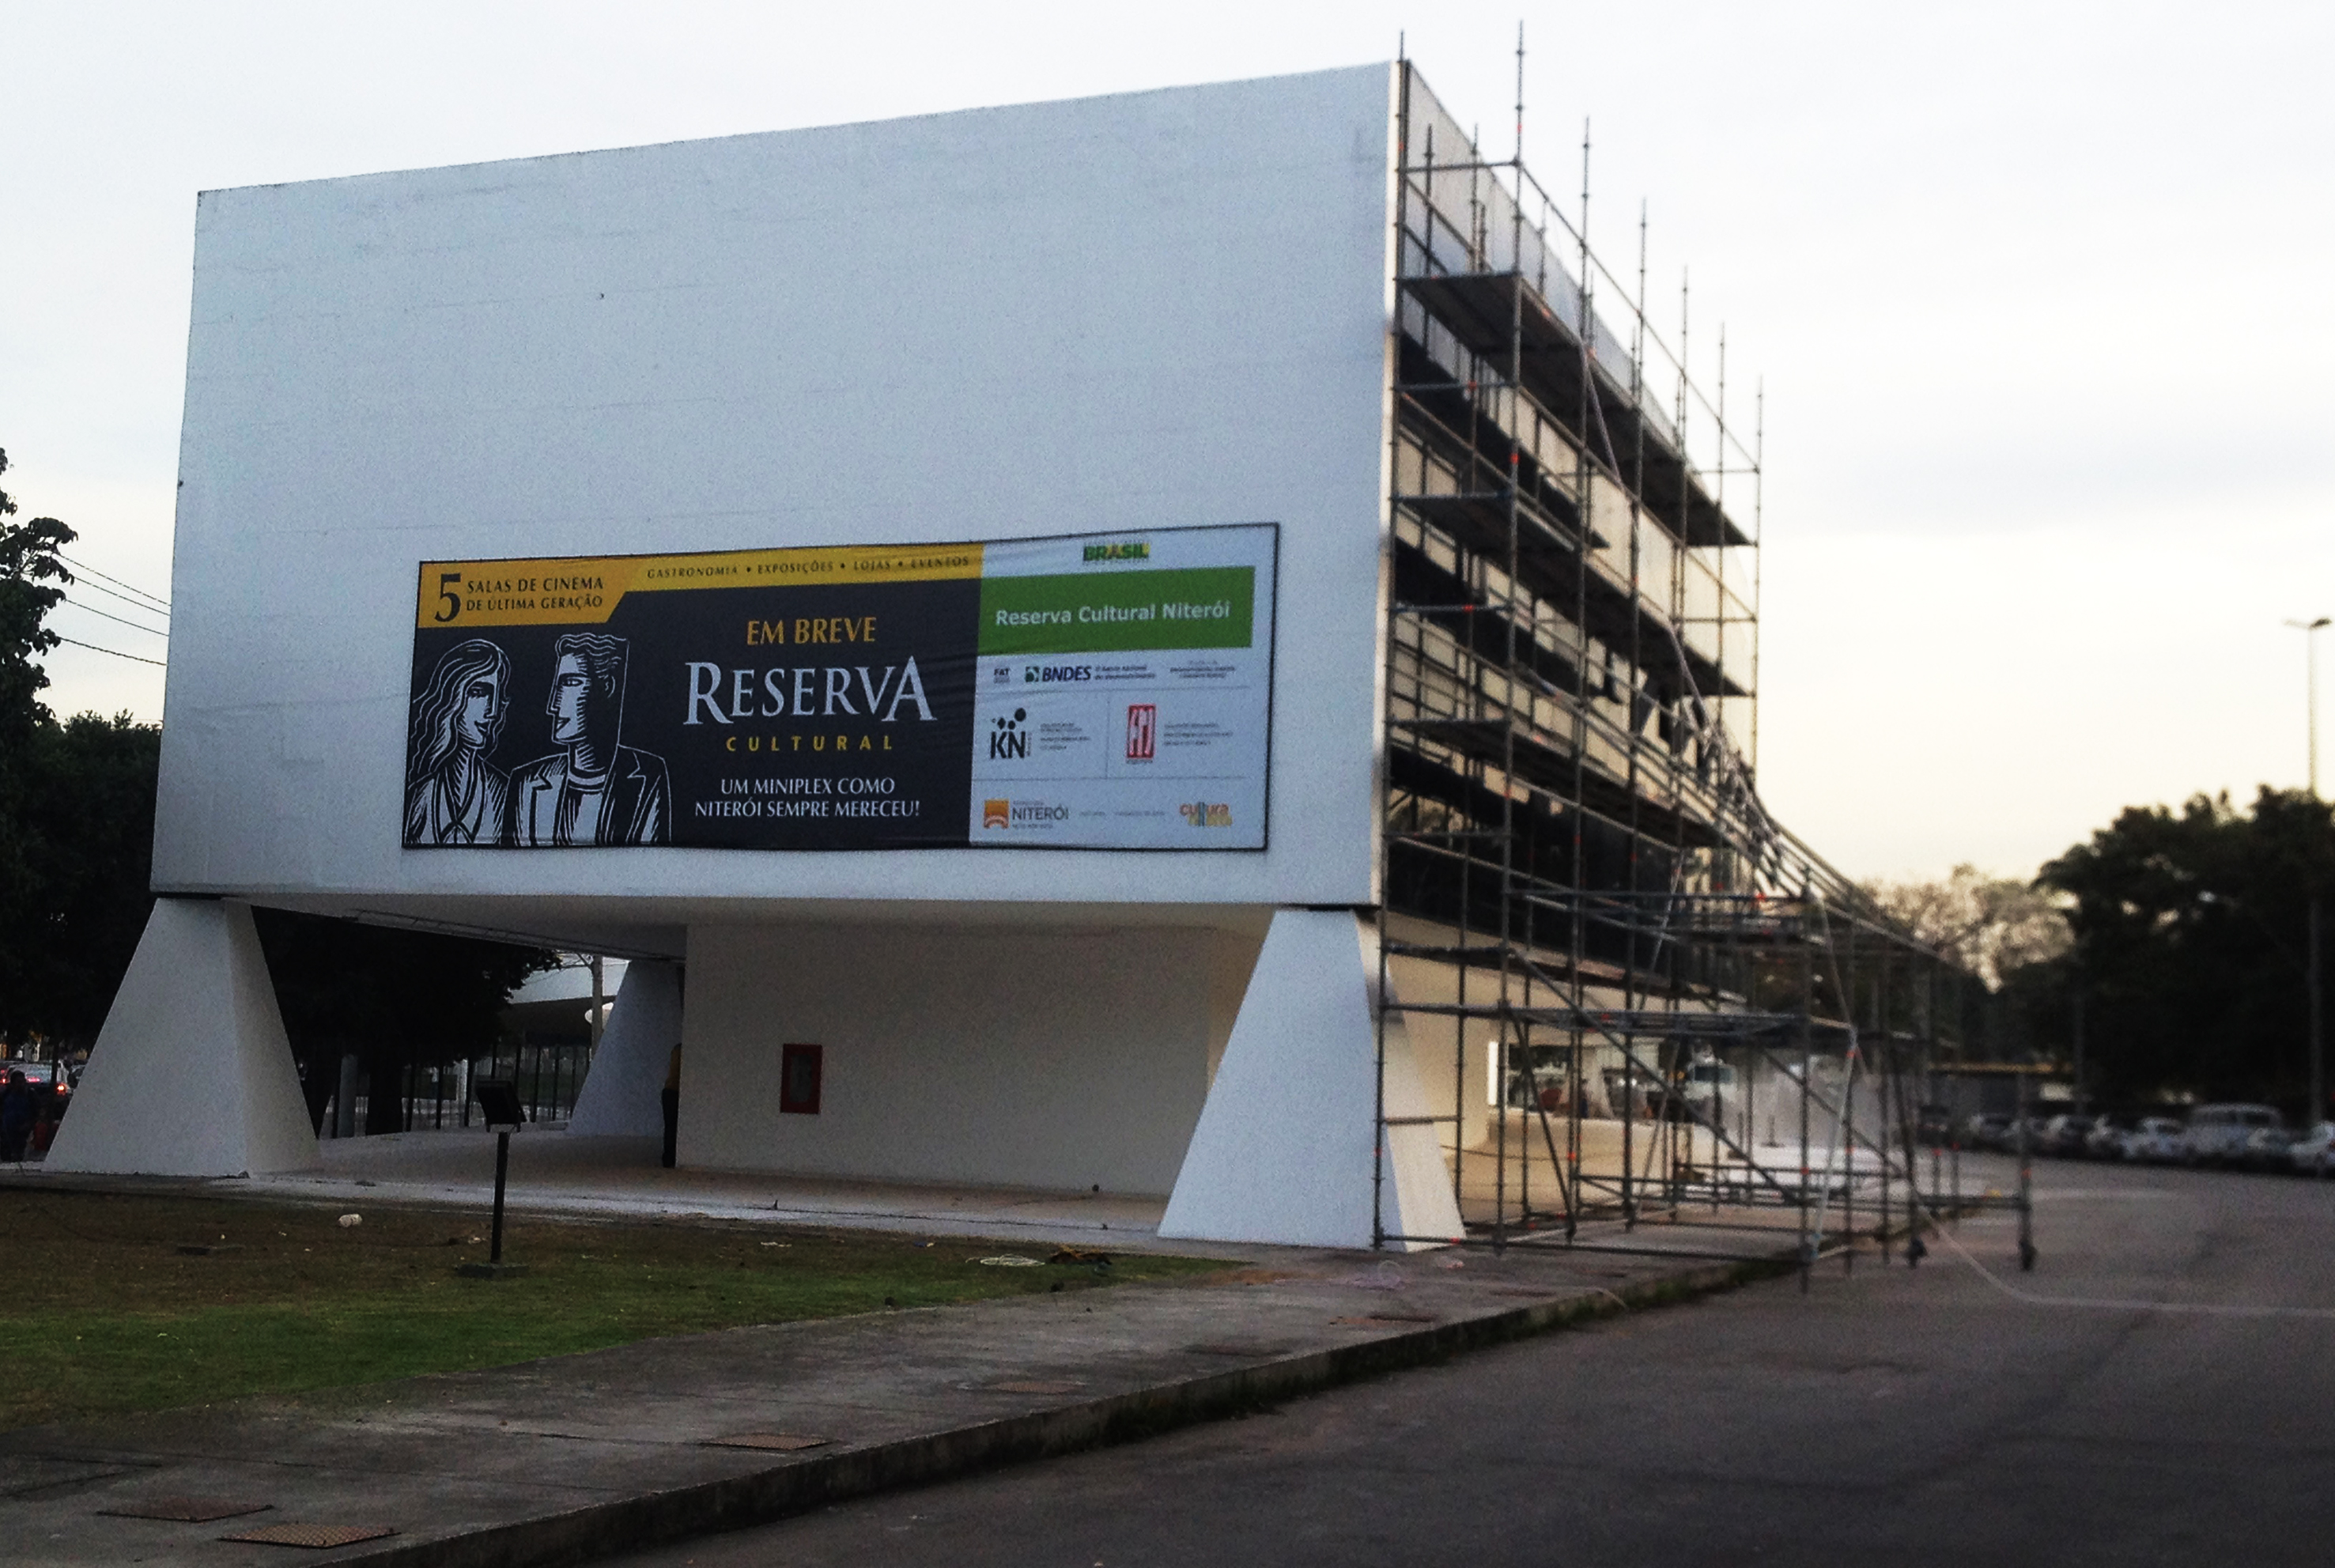  Закритий протягом 11 років кіноцентр Petrobras знову відкривається в Ріо-де-Жанейро